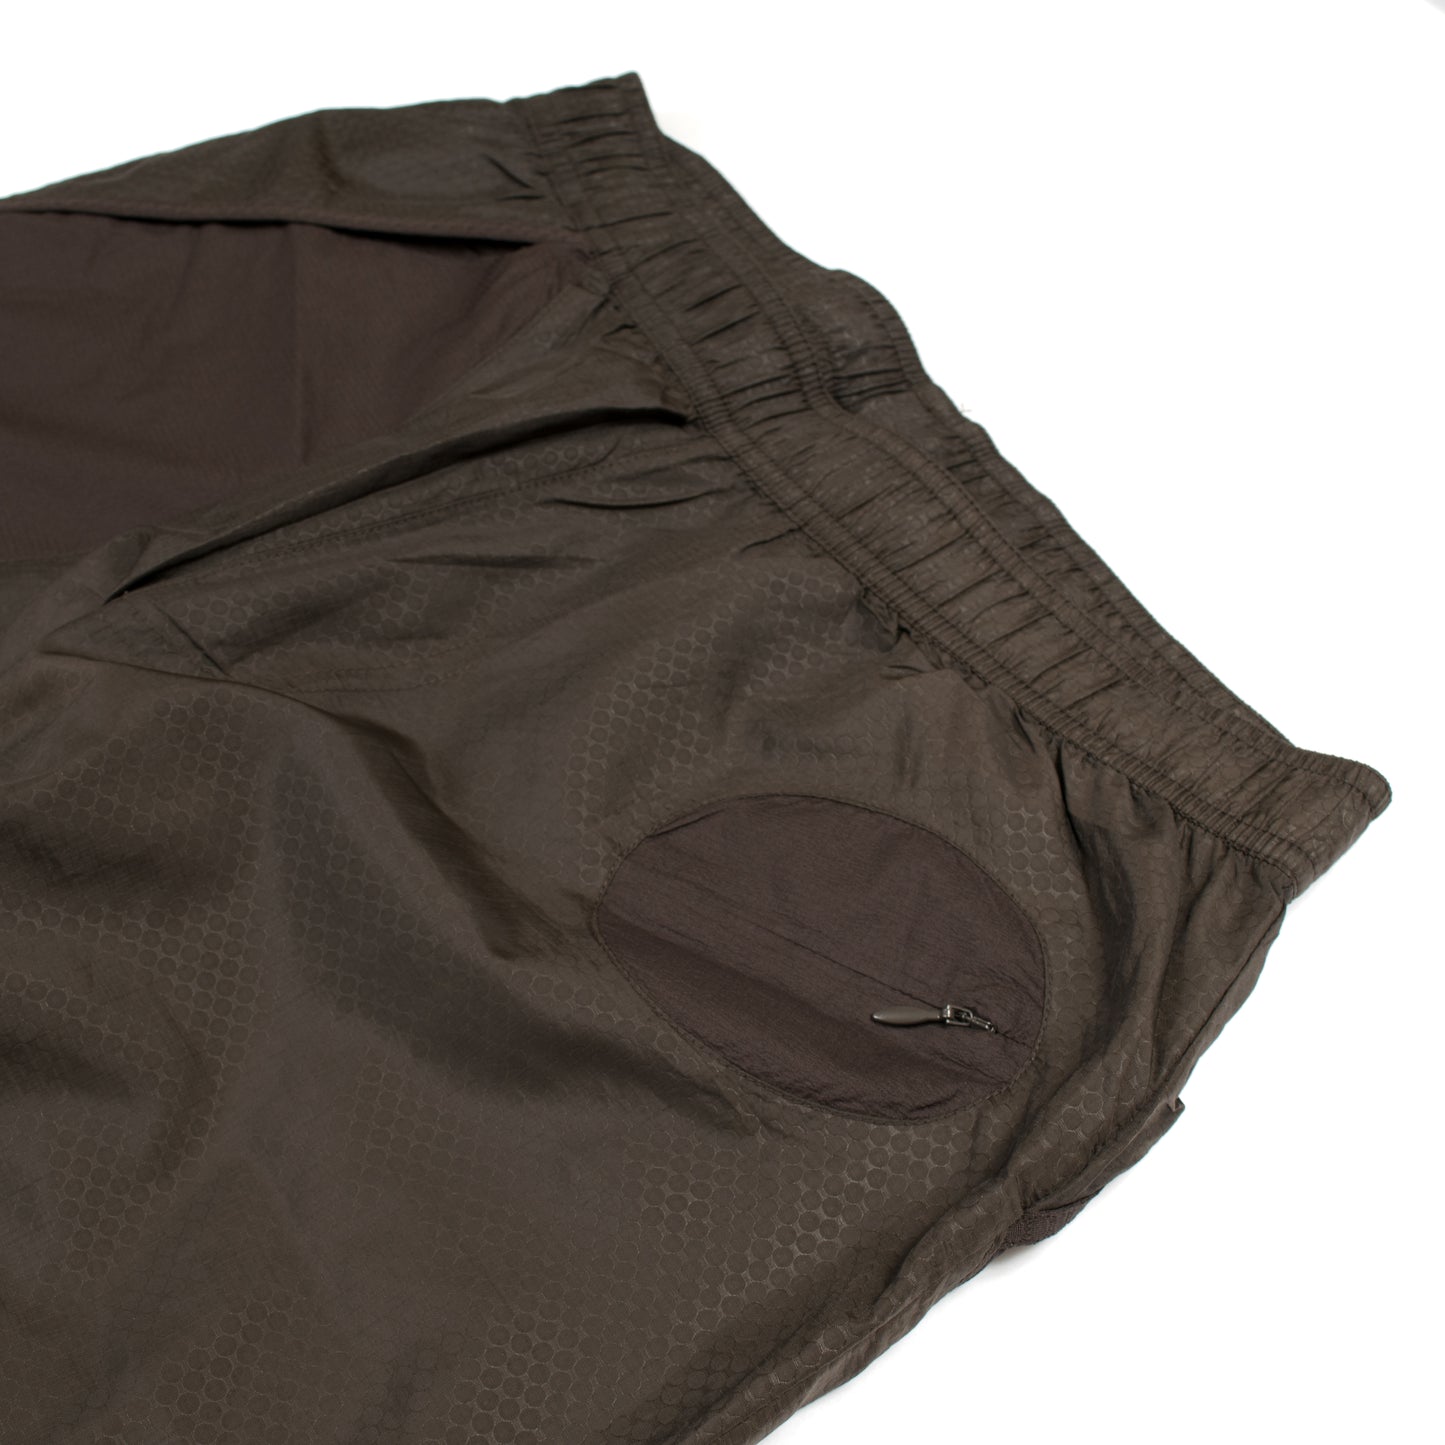 Undercover x Nike Gyakusou Fabric Mixed Long Pants